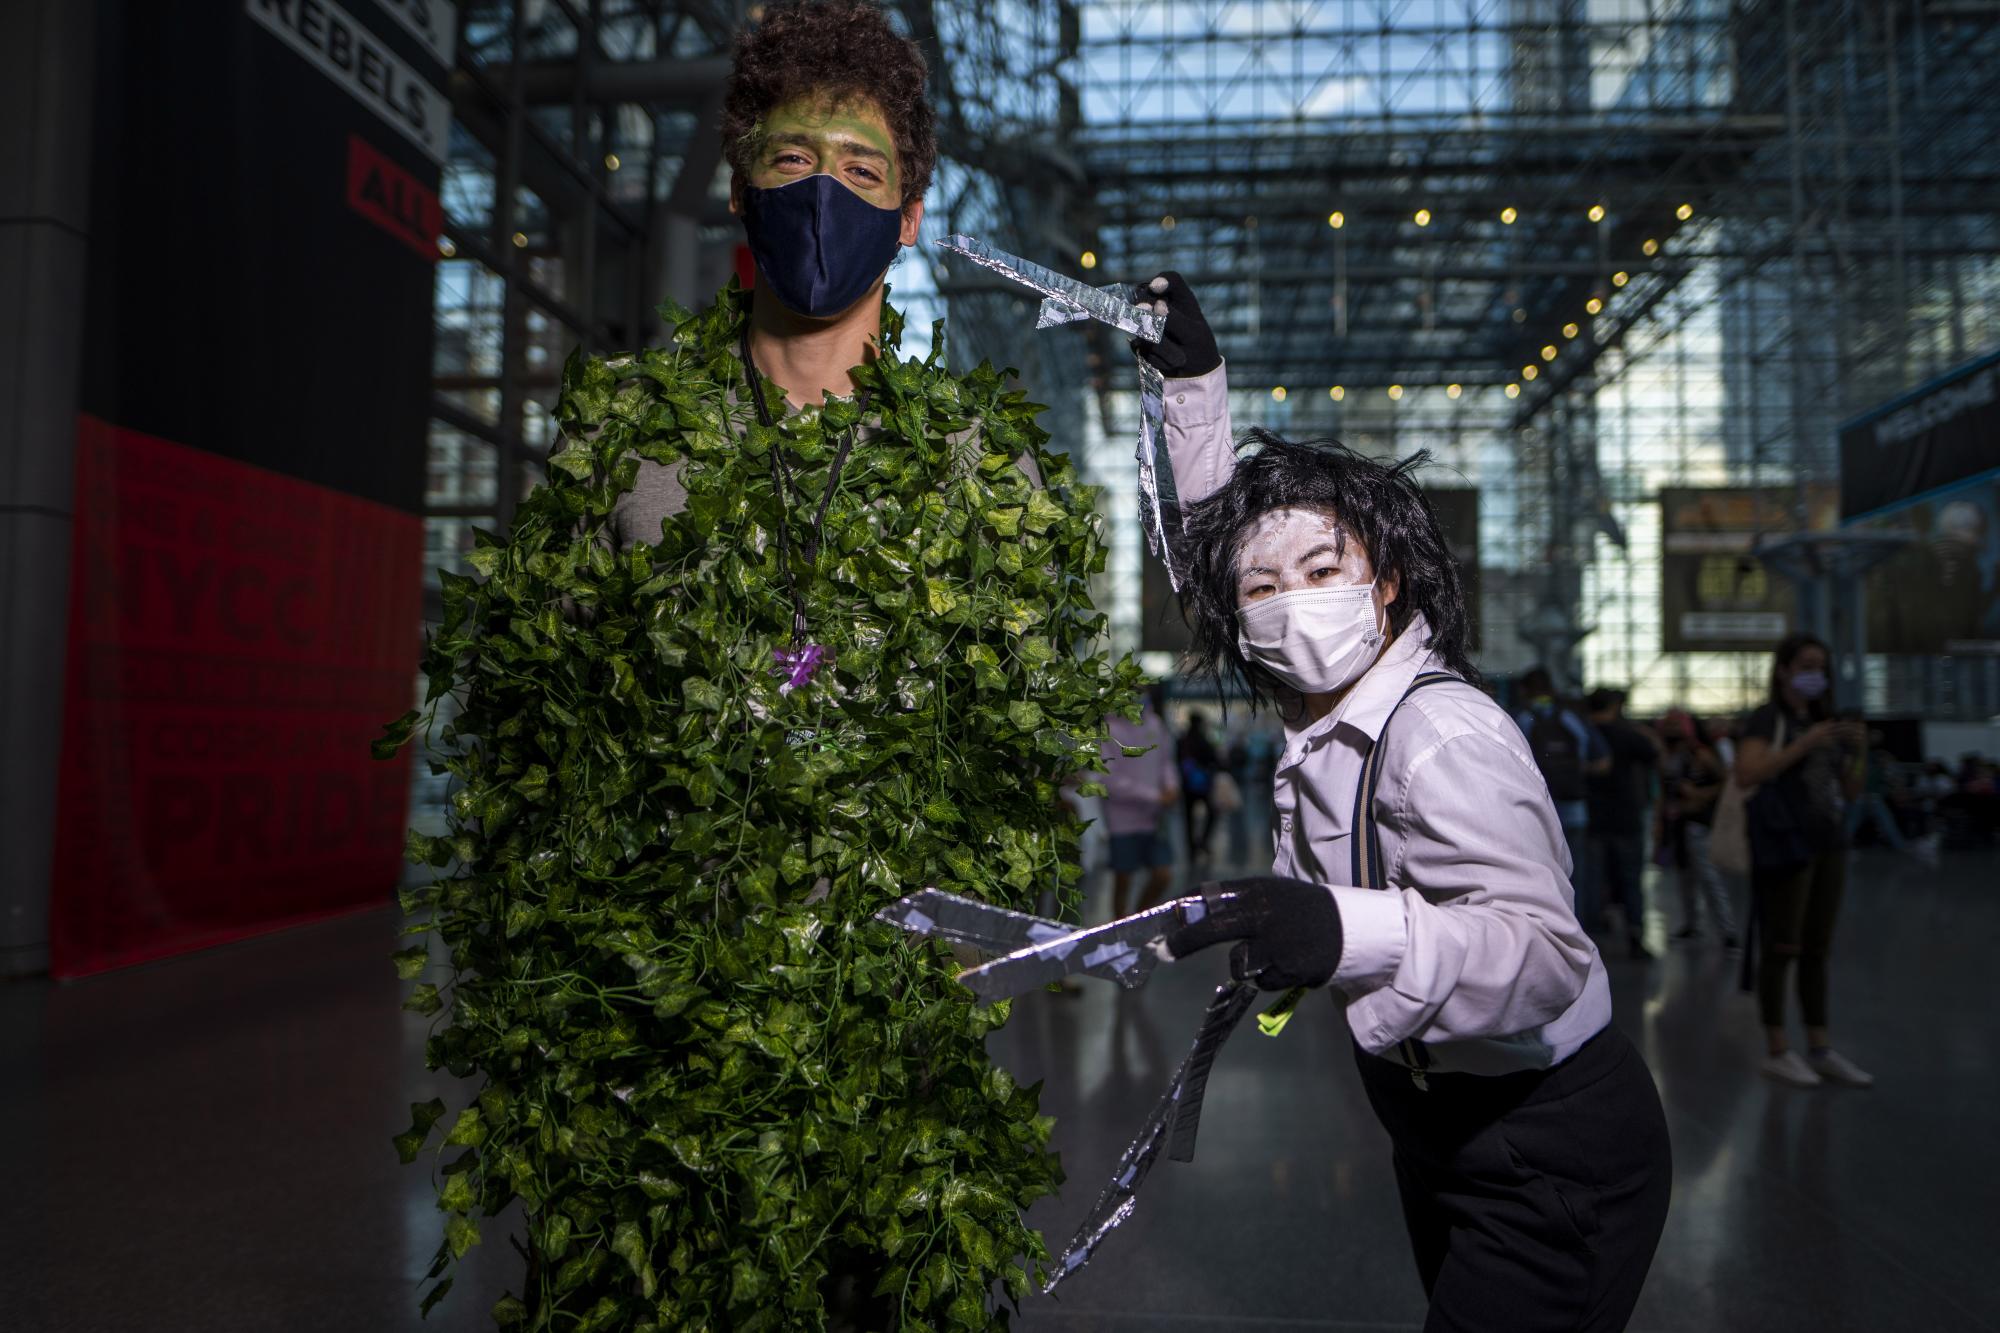 Dos participantes vestidos como Edward Scissorhands y un arbusto posan durante la Comic Con de Nueva York en el Centro de Convenciones Jacob K.Javits el jueves 7 de octubre de 2021 en Nueva York. (Foto de Charles Sykes / Invision / AP)